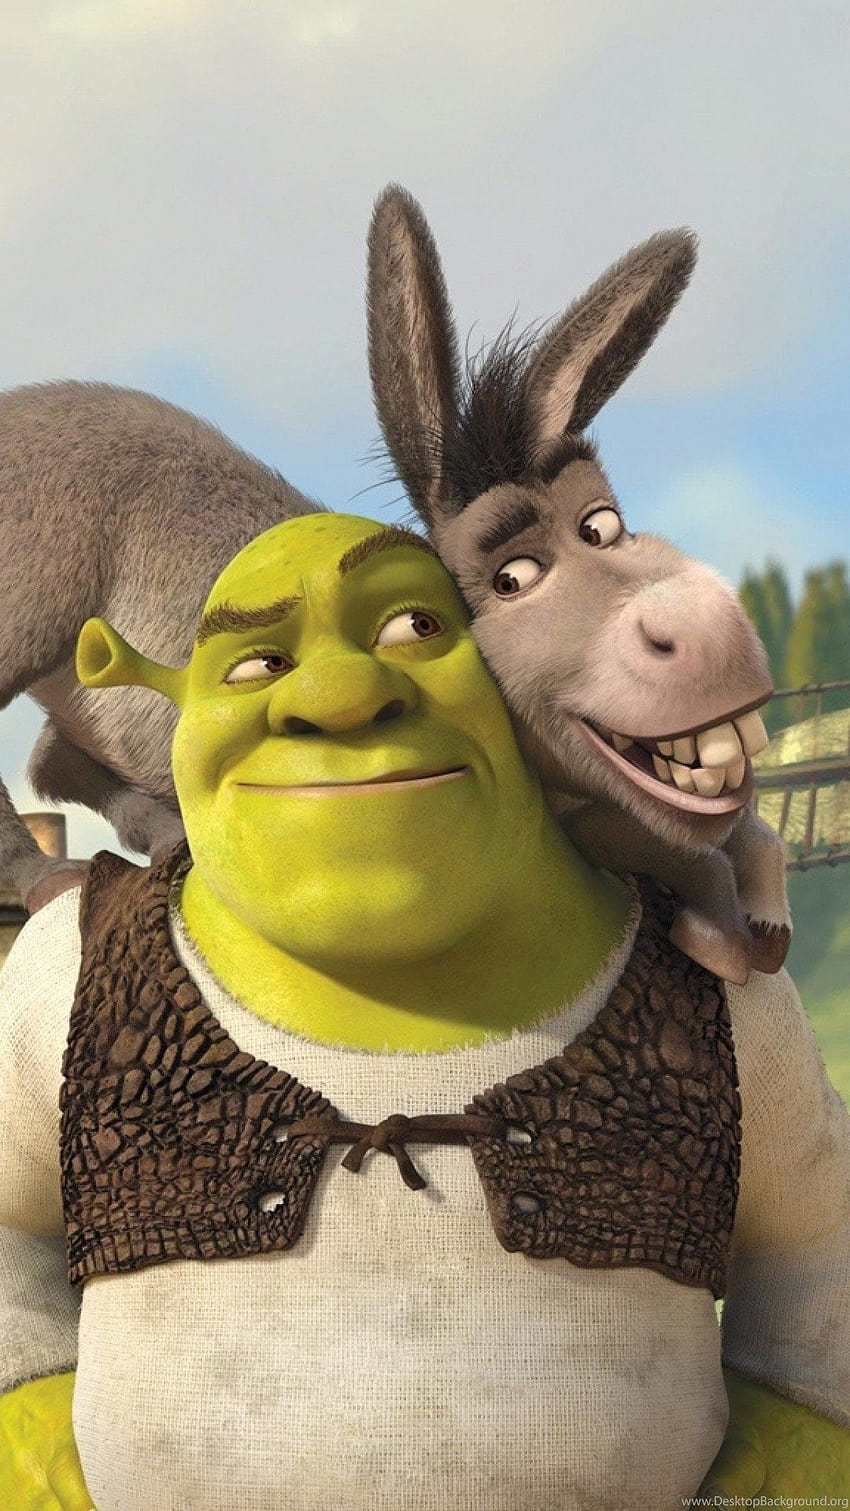 Shrek y el burro Shrek para siempre después del iPhone 6 Plus ... s, shrek divertido fondo de pantalla del teléfono